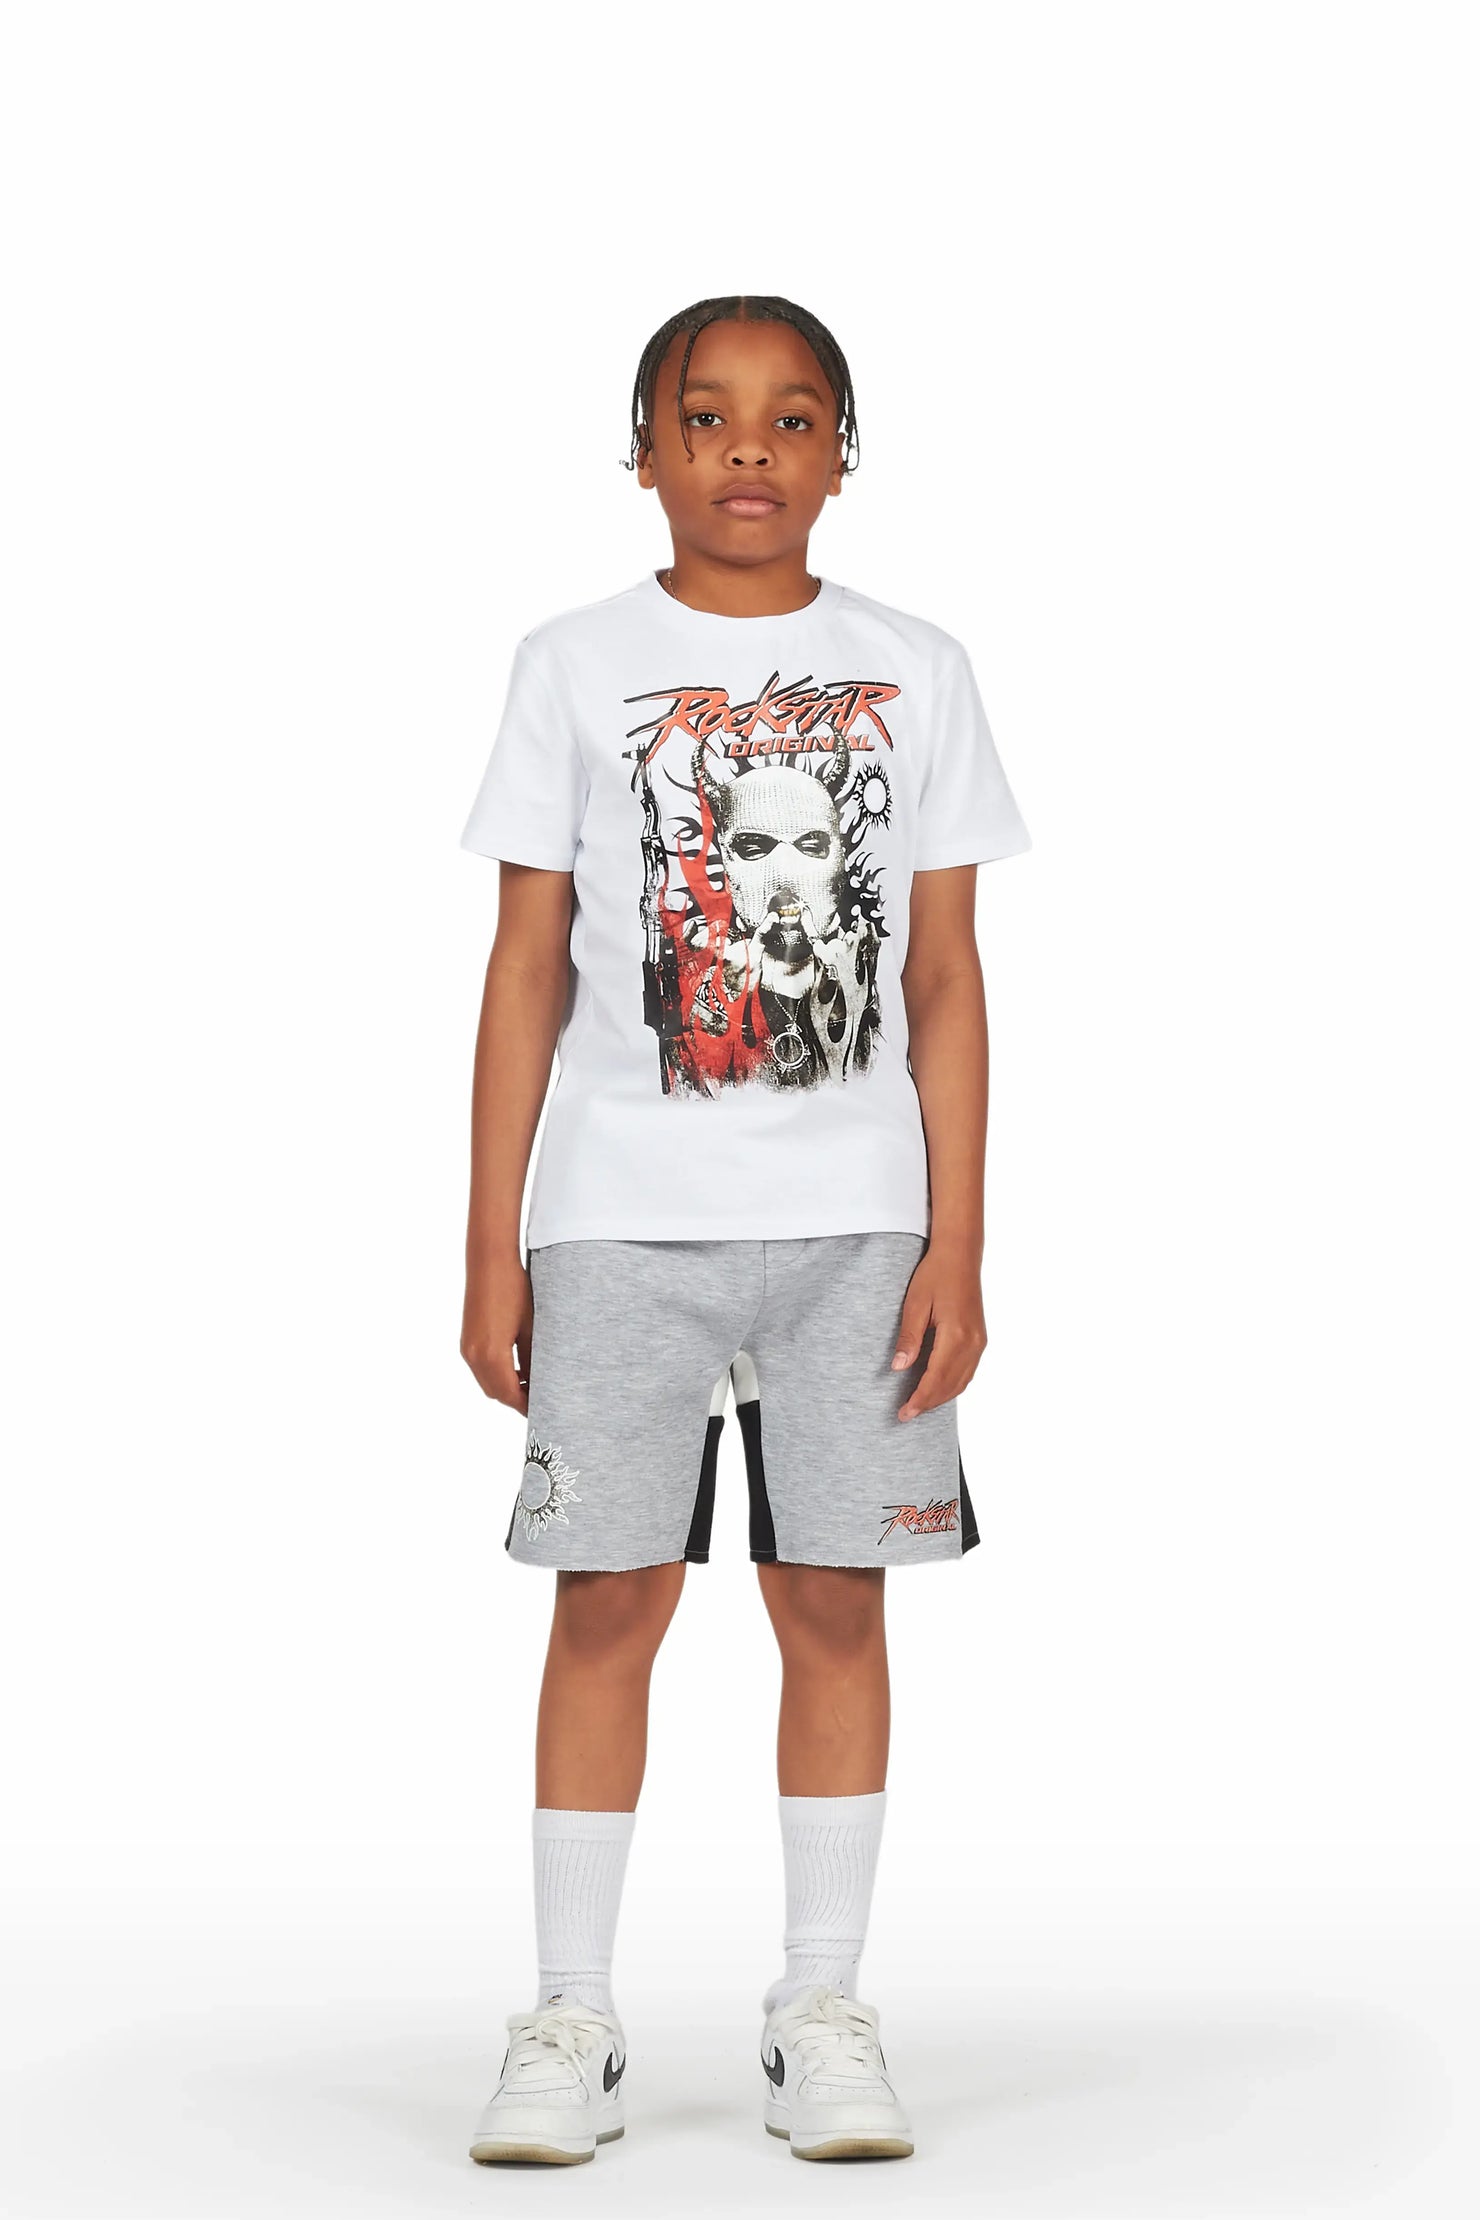 Boys Merci White/Grey T-Shirt Short Set